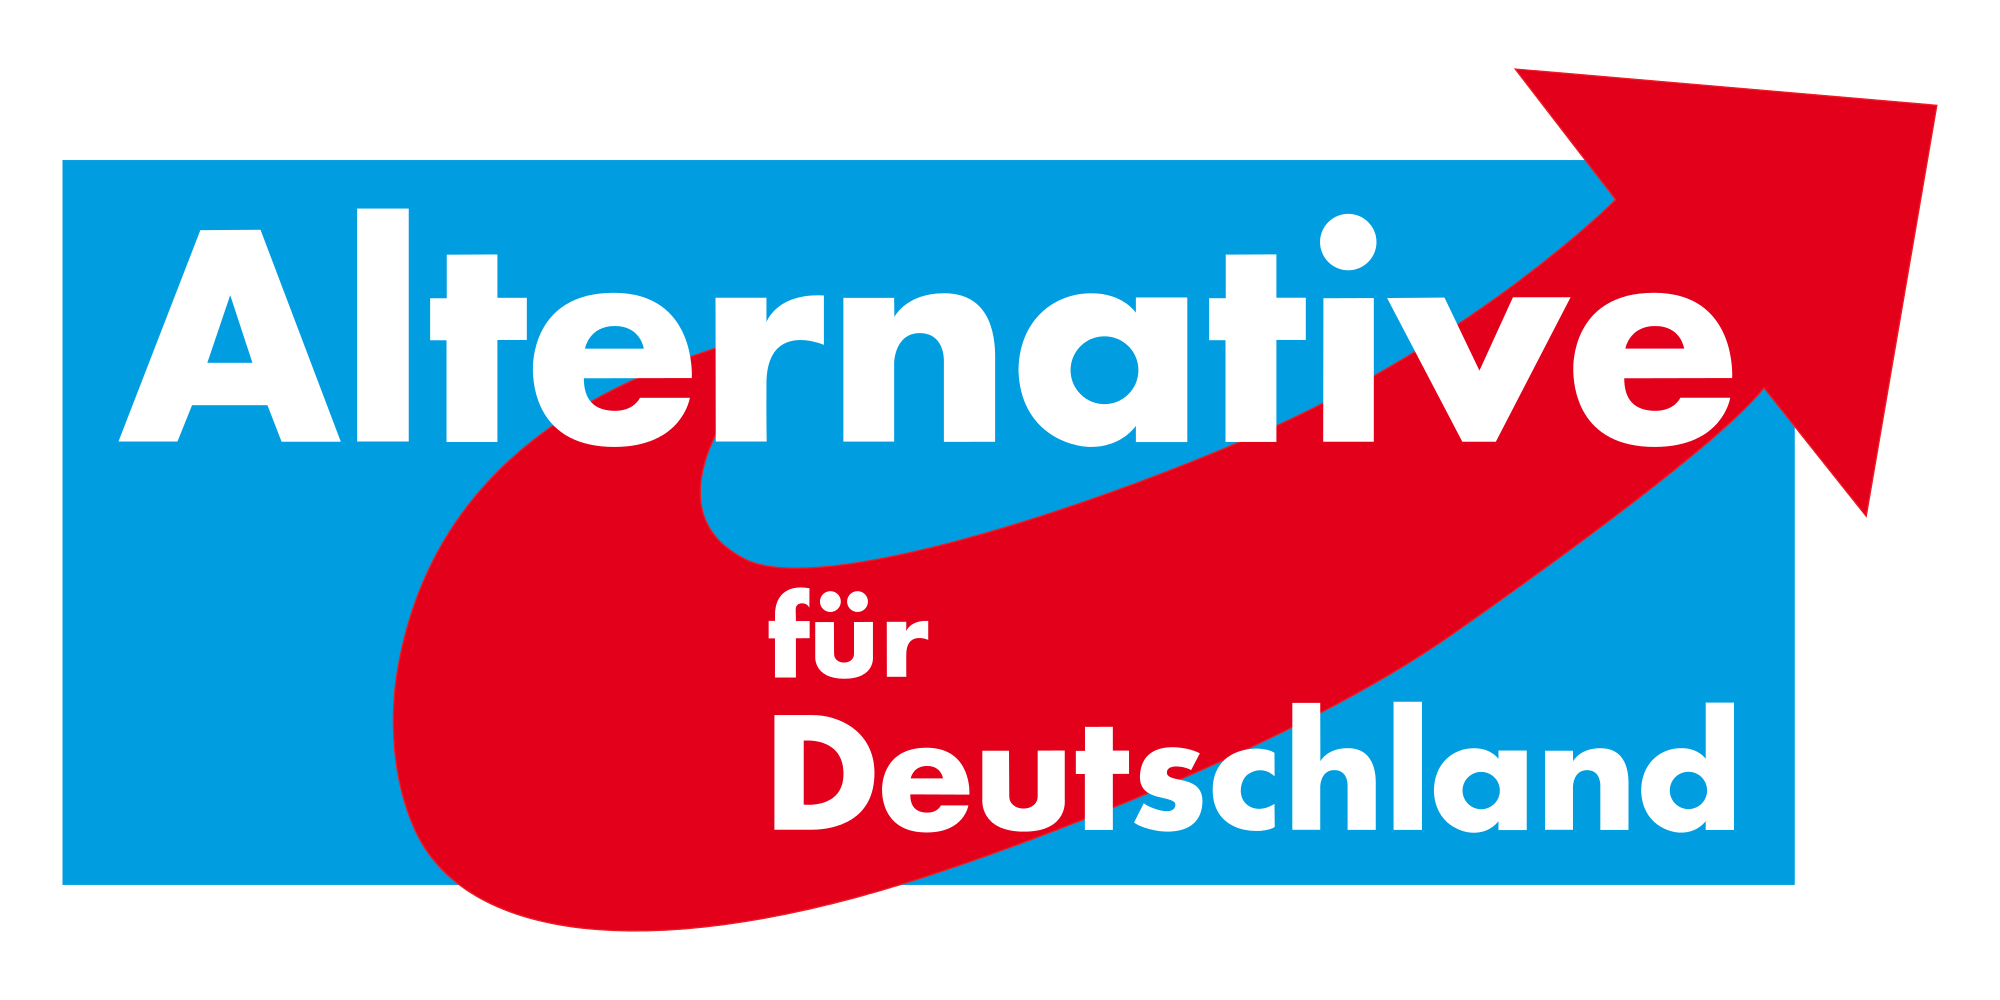 Alternative-fuer-Deutschland-Logopng